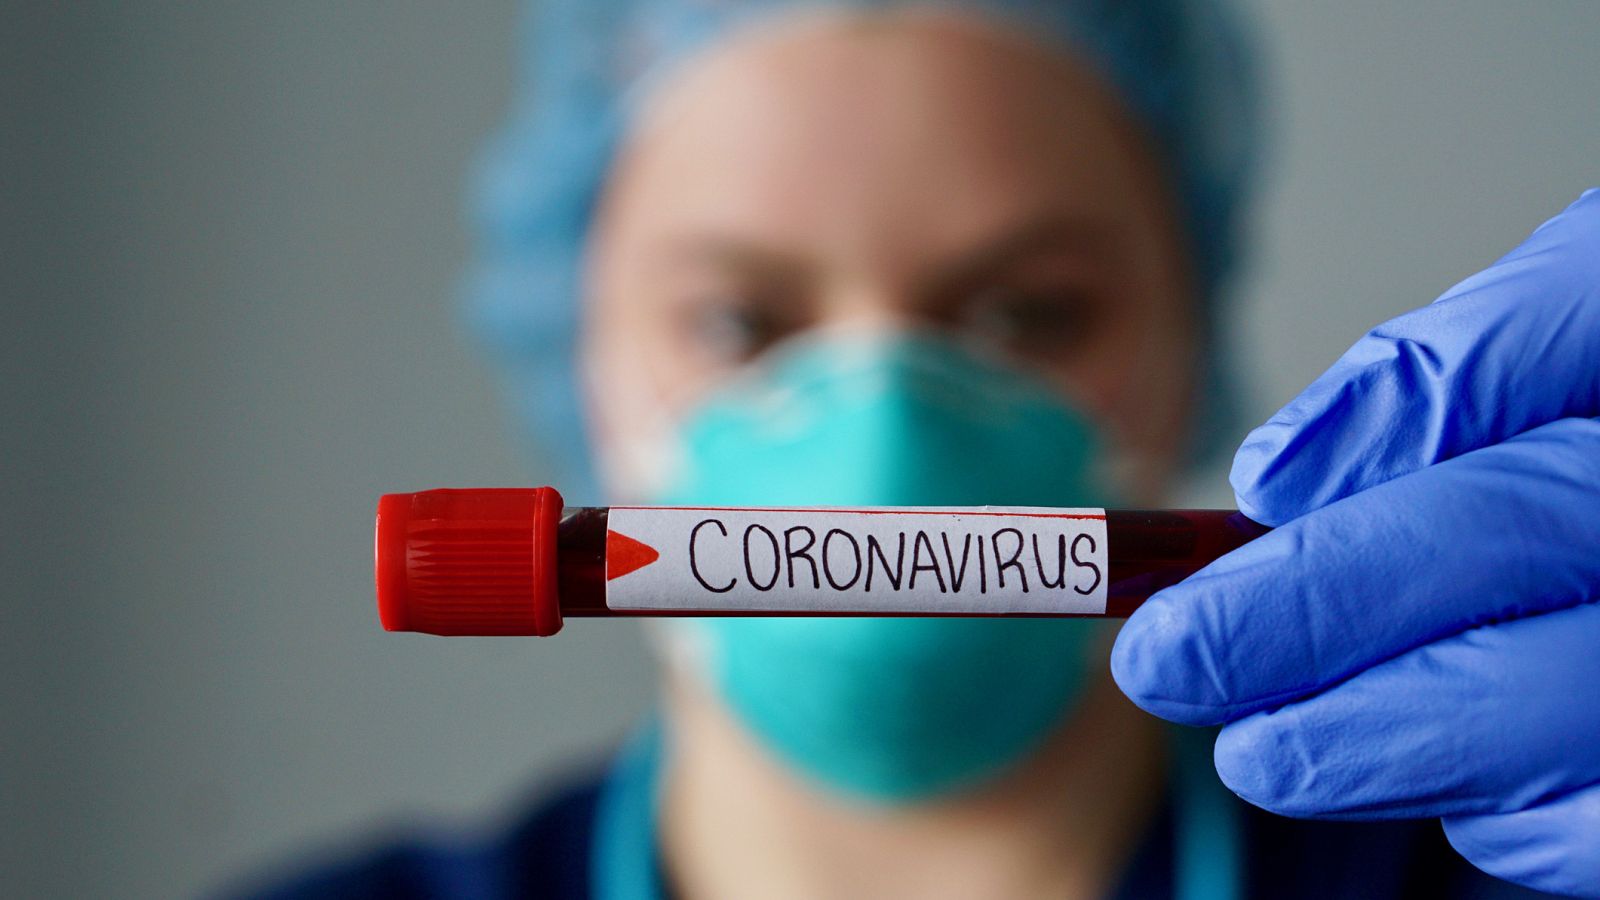 La epidemia de coronavirus Covid-19 ha desatado una carrera contrarreloj en la comunidad científica para encontrar una vacuna.